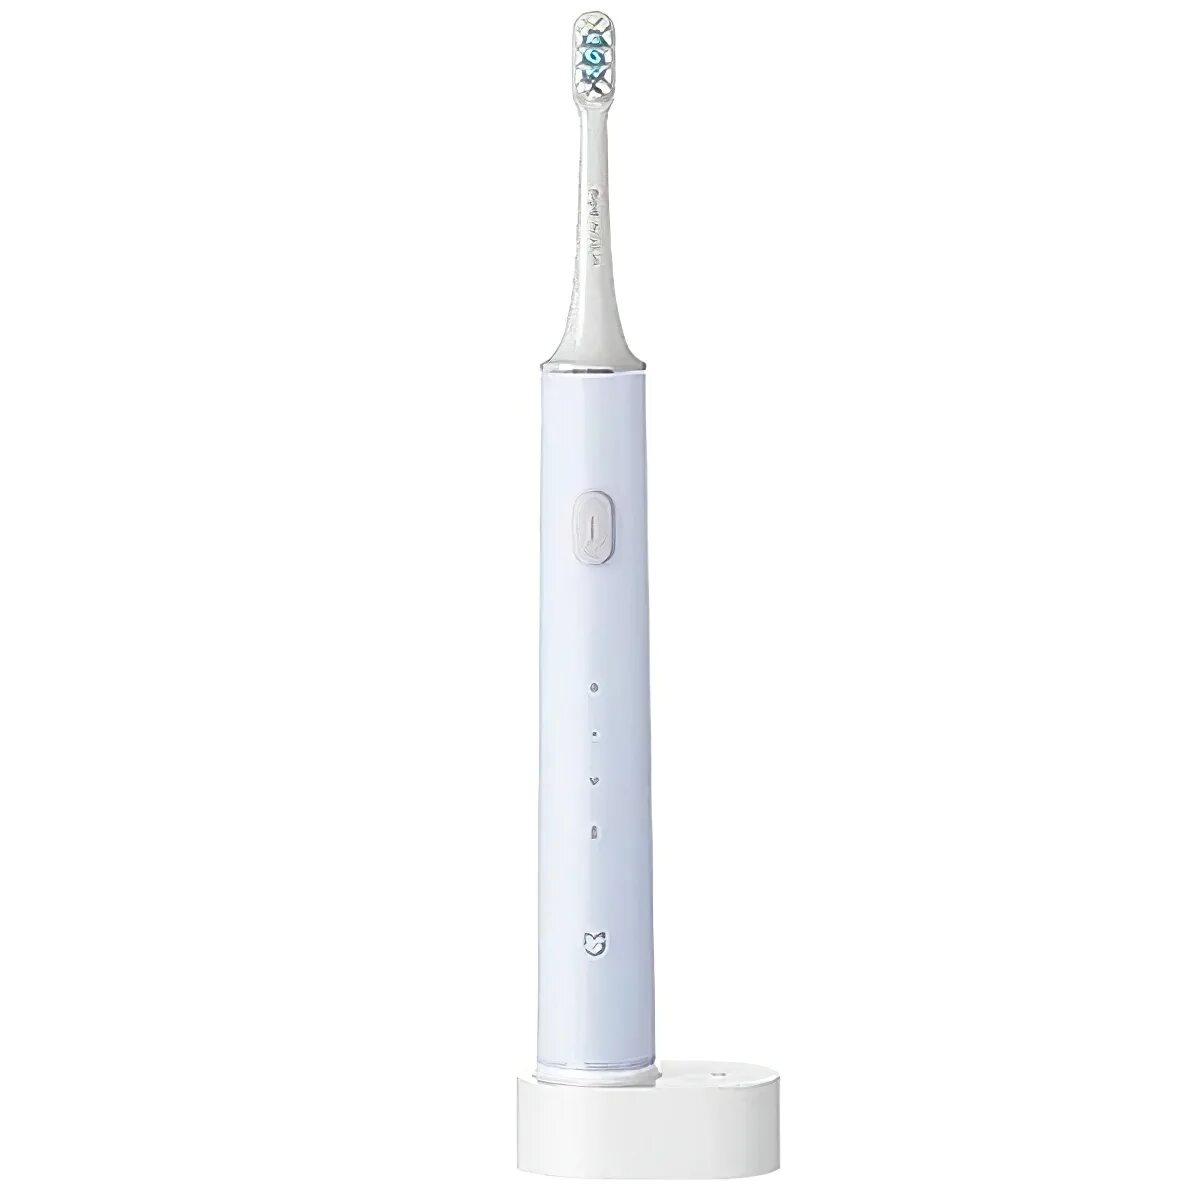 Mijia sonic toothbrush. Xiaomi Mijia t300 Electric Toothbrush. Электрическая щетка soocas x3u. Электрическая зубная щетка Xiaomi Mijia t500 (mes601). Электрическая зубная щетка Xiaomi Mijia Sonic Electric Toothbrush t500 (mes601).